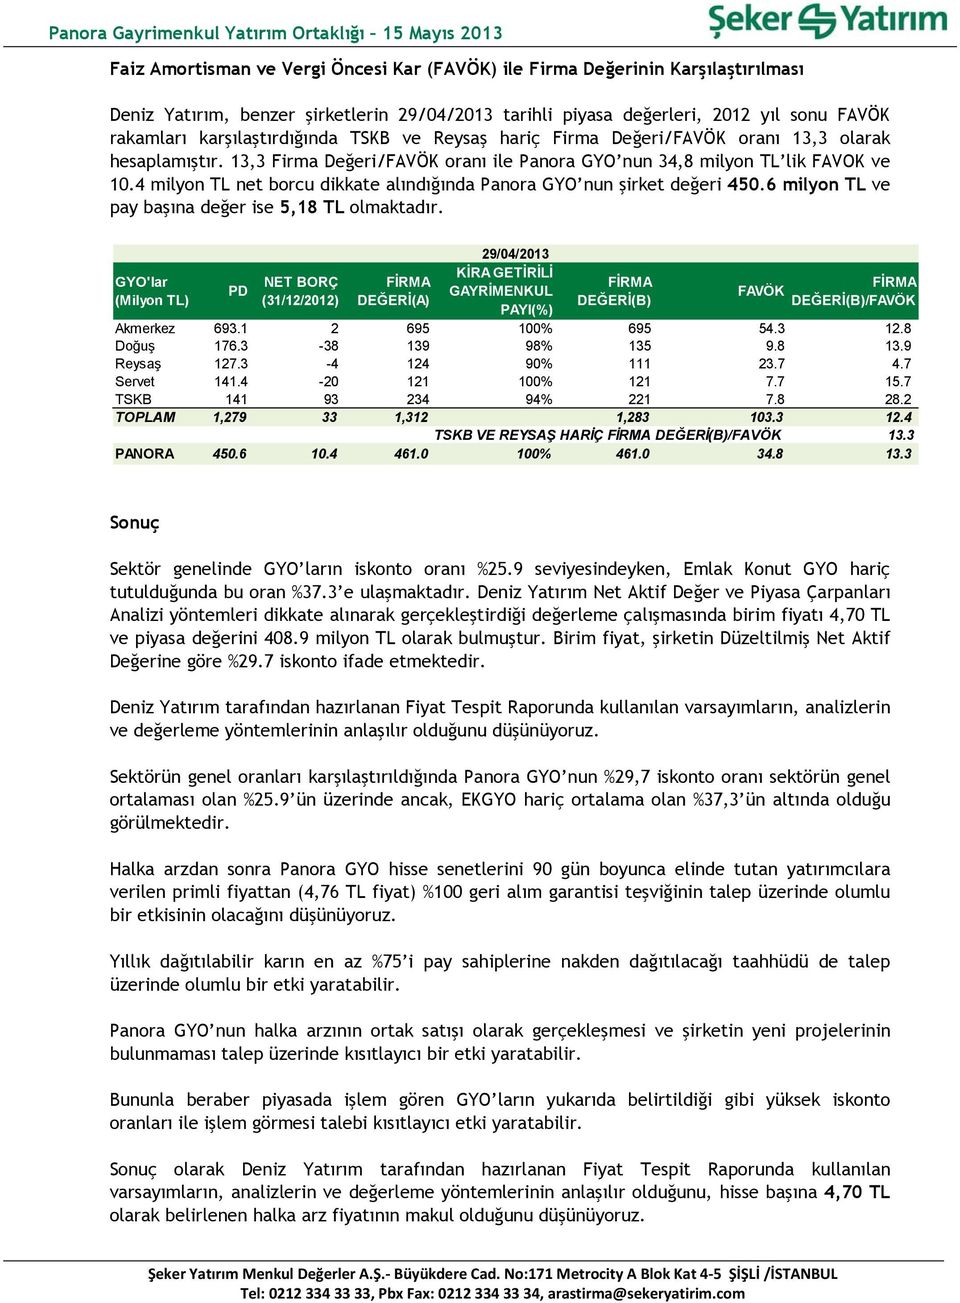 4 milyon TL net borcu dikkate alındığında Panora GYO nun şirket değeri 450.6 milyon TL ve pay başına değer ise 5,18 TL olmaktadır.